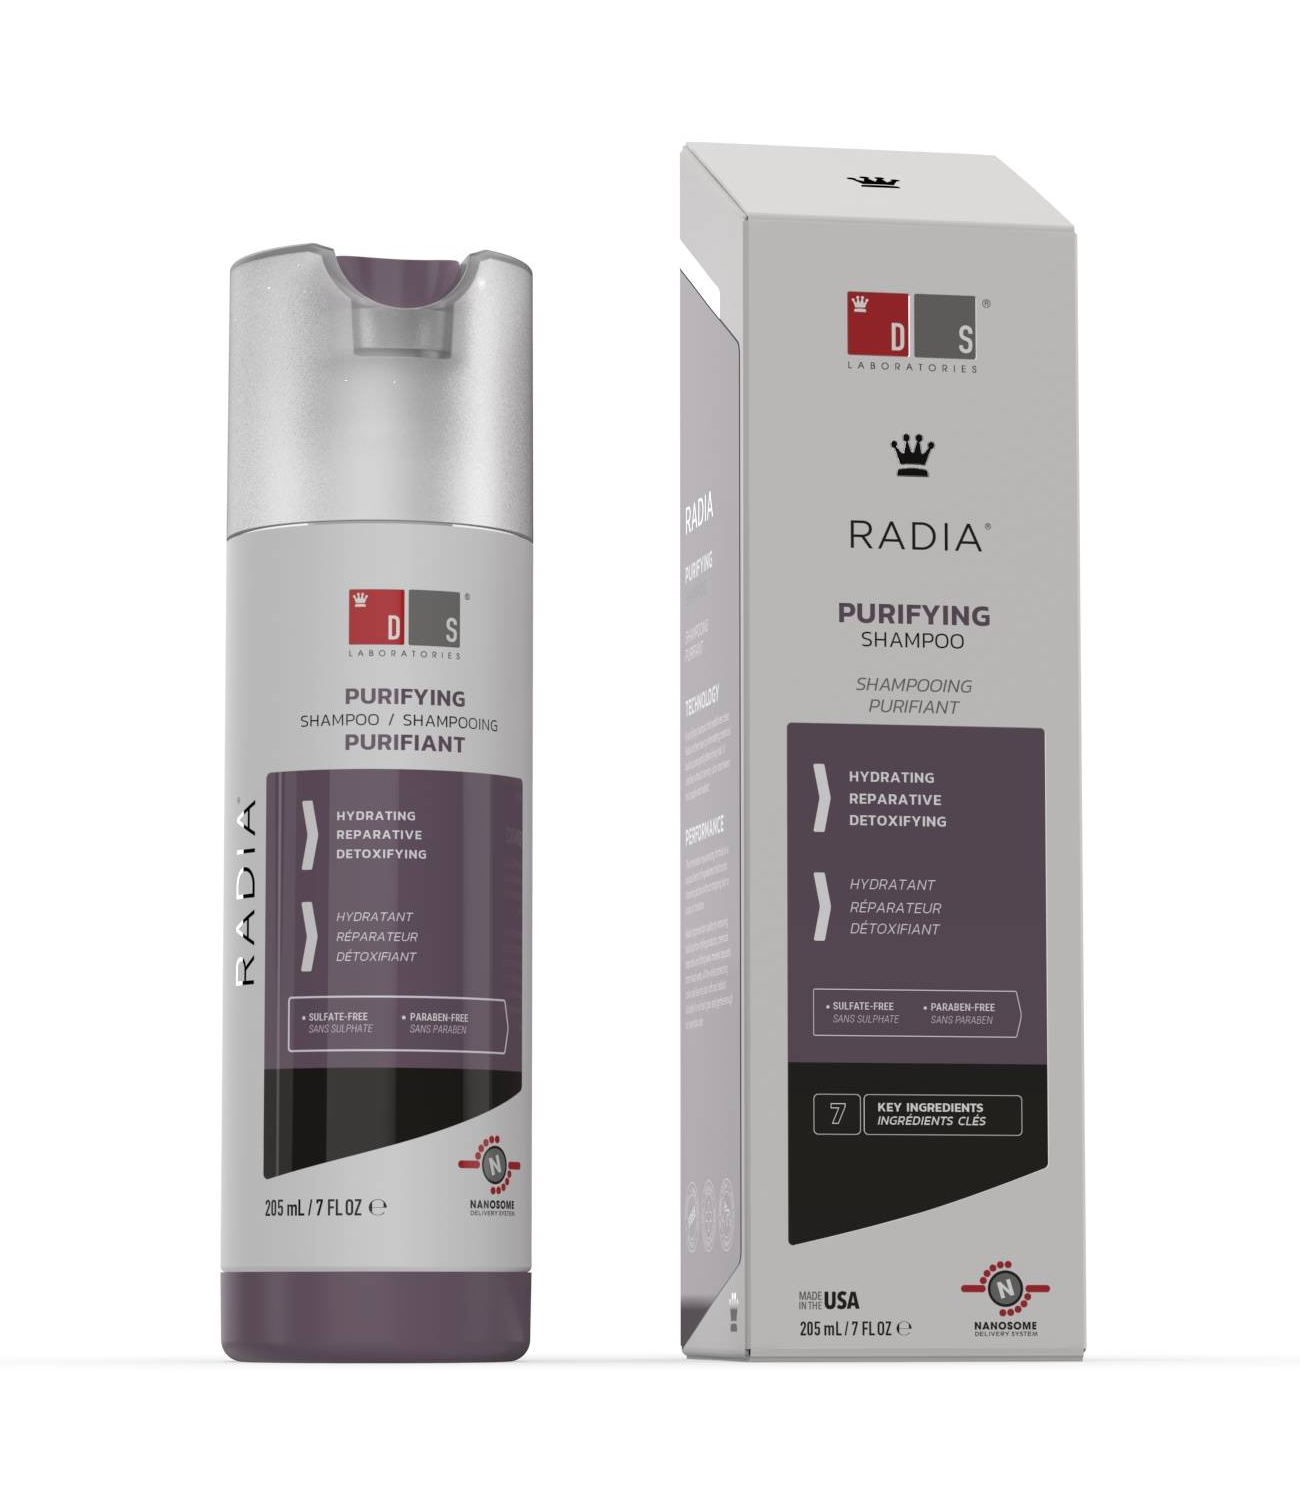 Radia | Shampoo purificante para couros cabeludos ressecados, sensíveis ou irritados